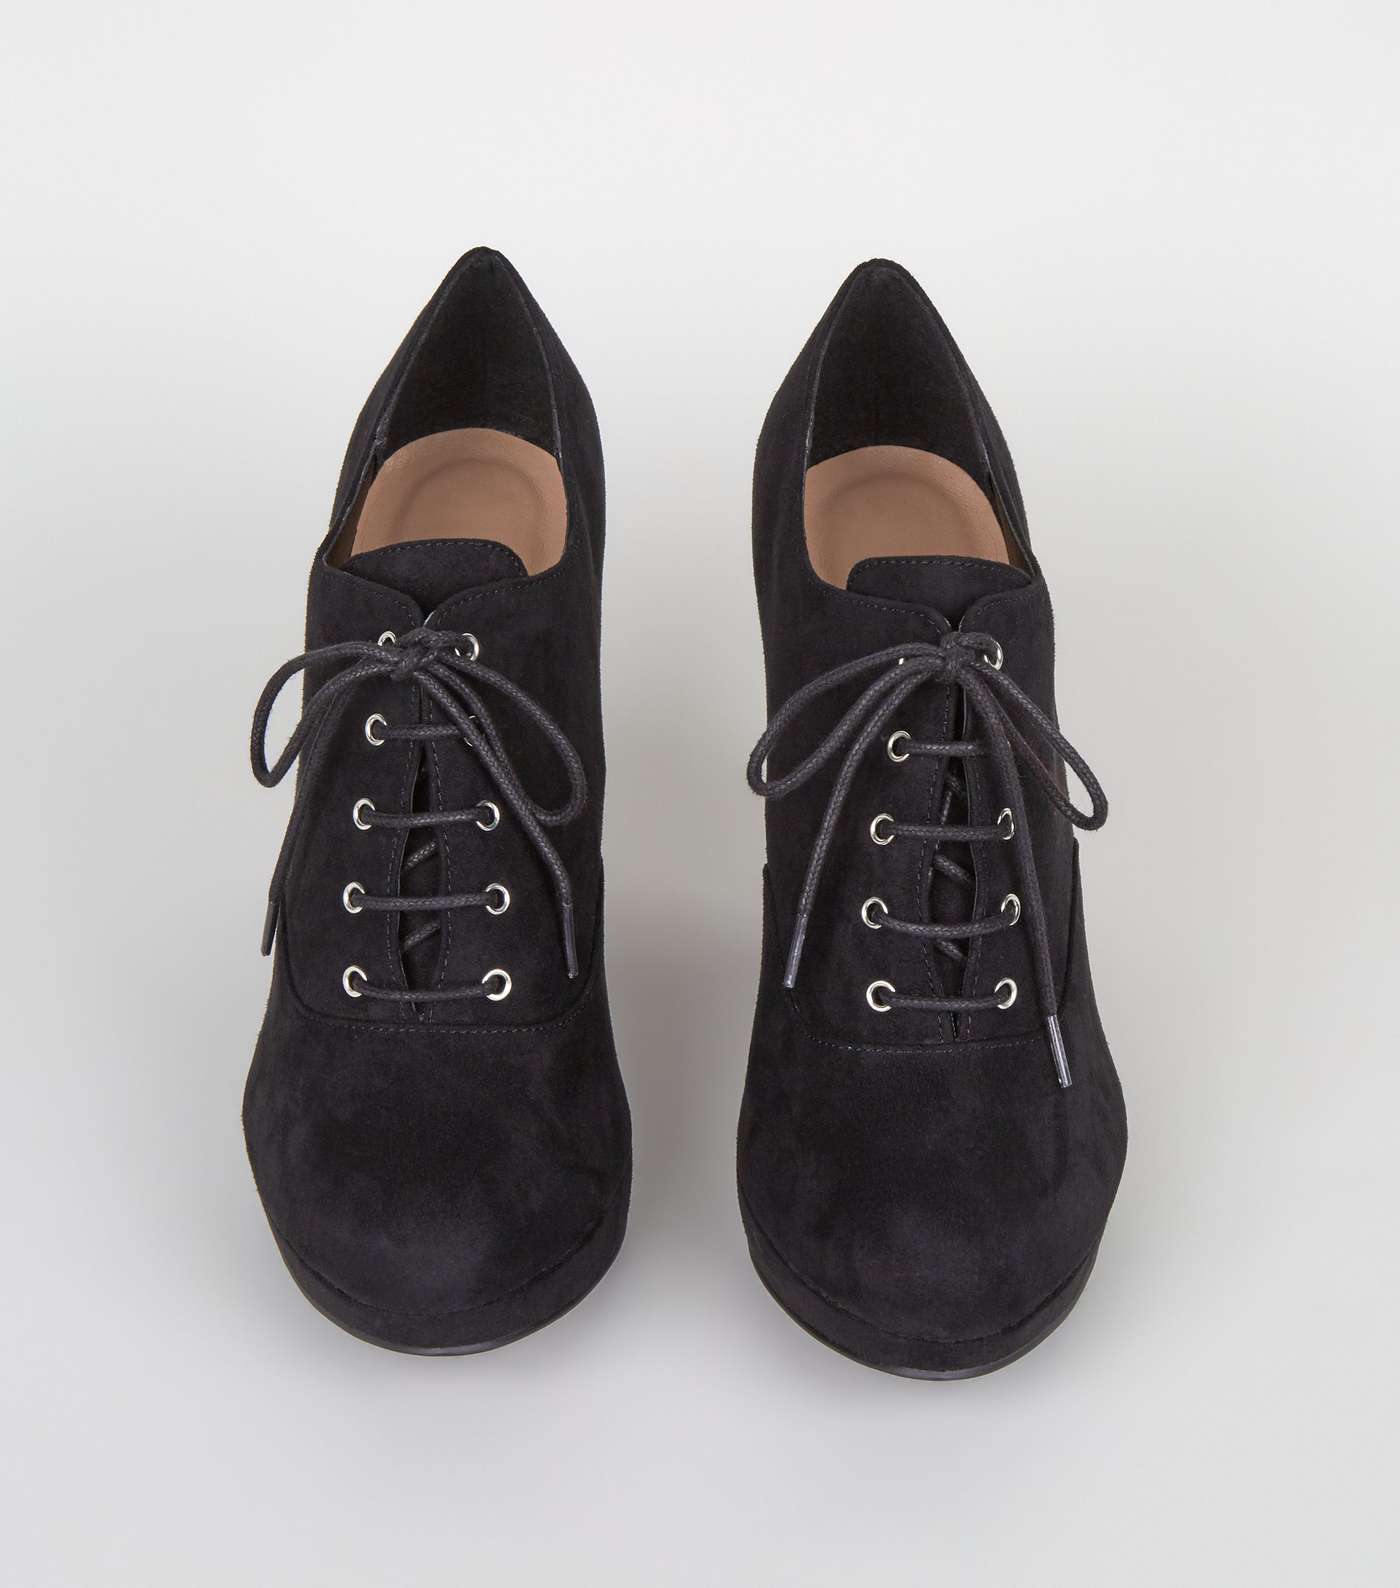 Wide Fit Black Suedette Lace Up Shoe Boots Image 3